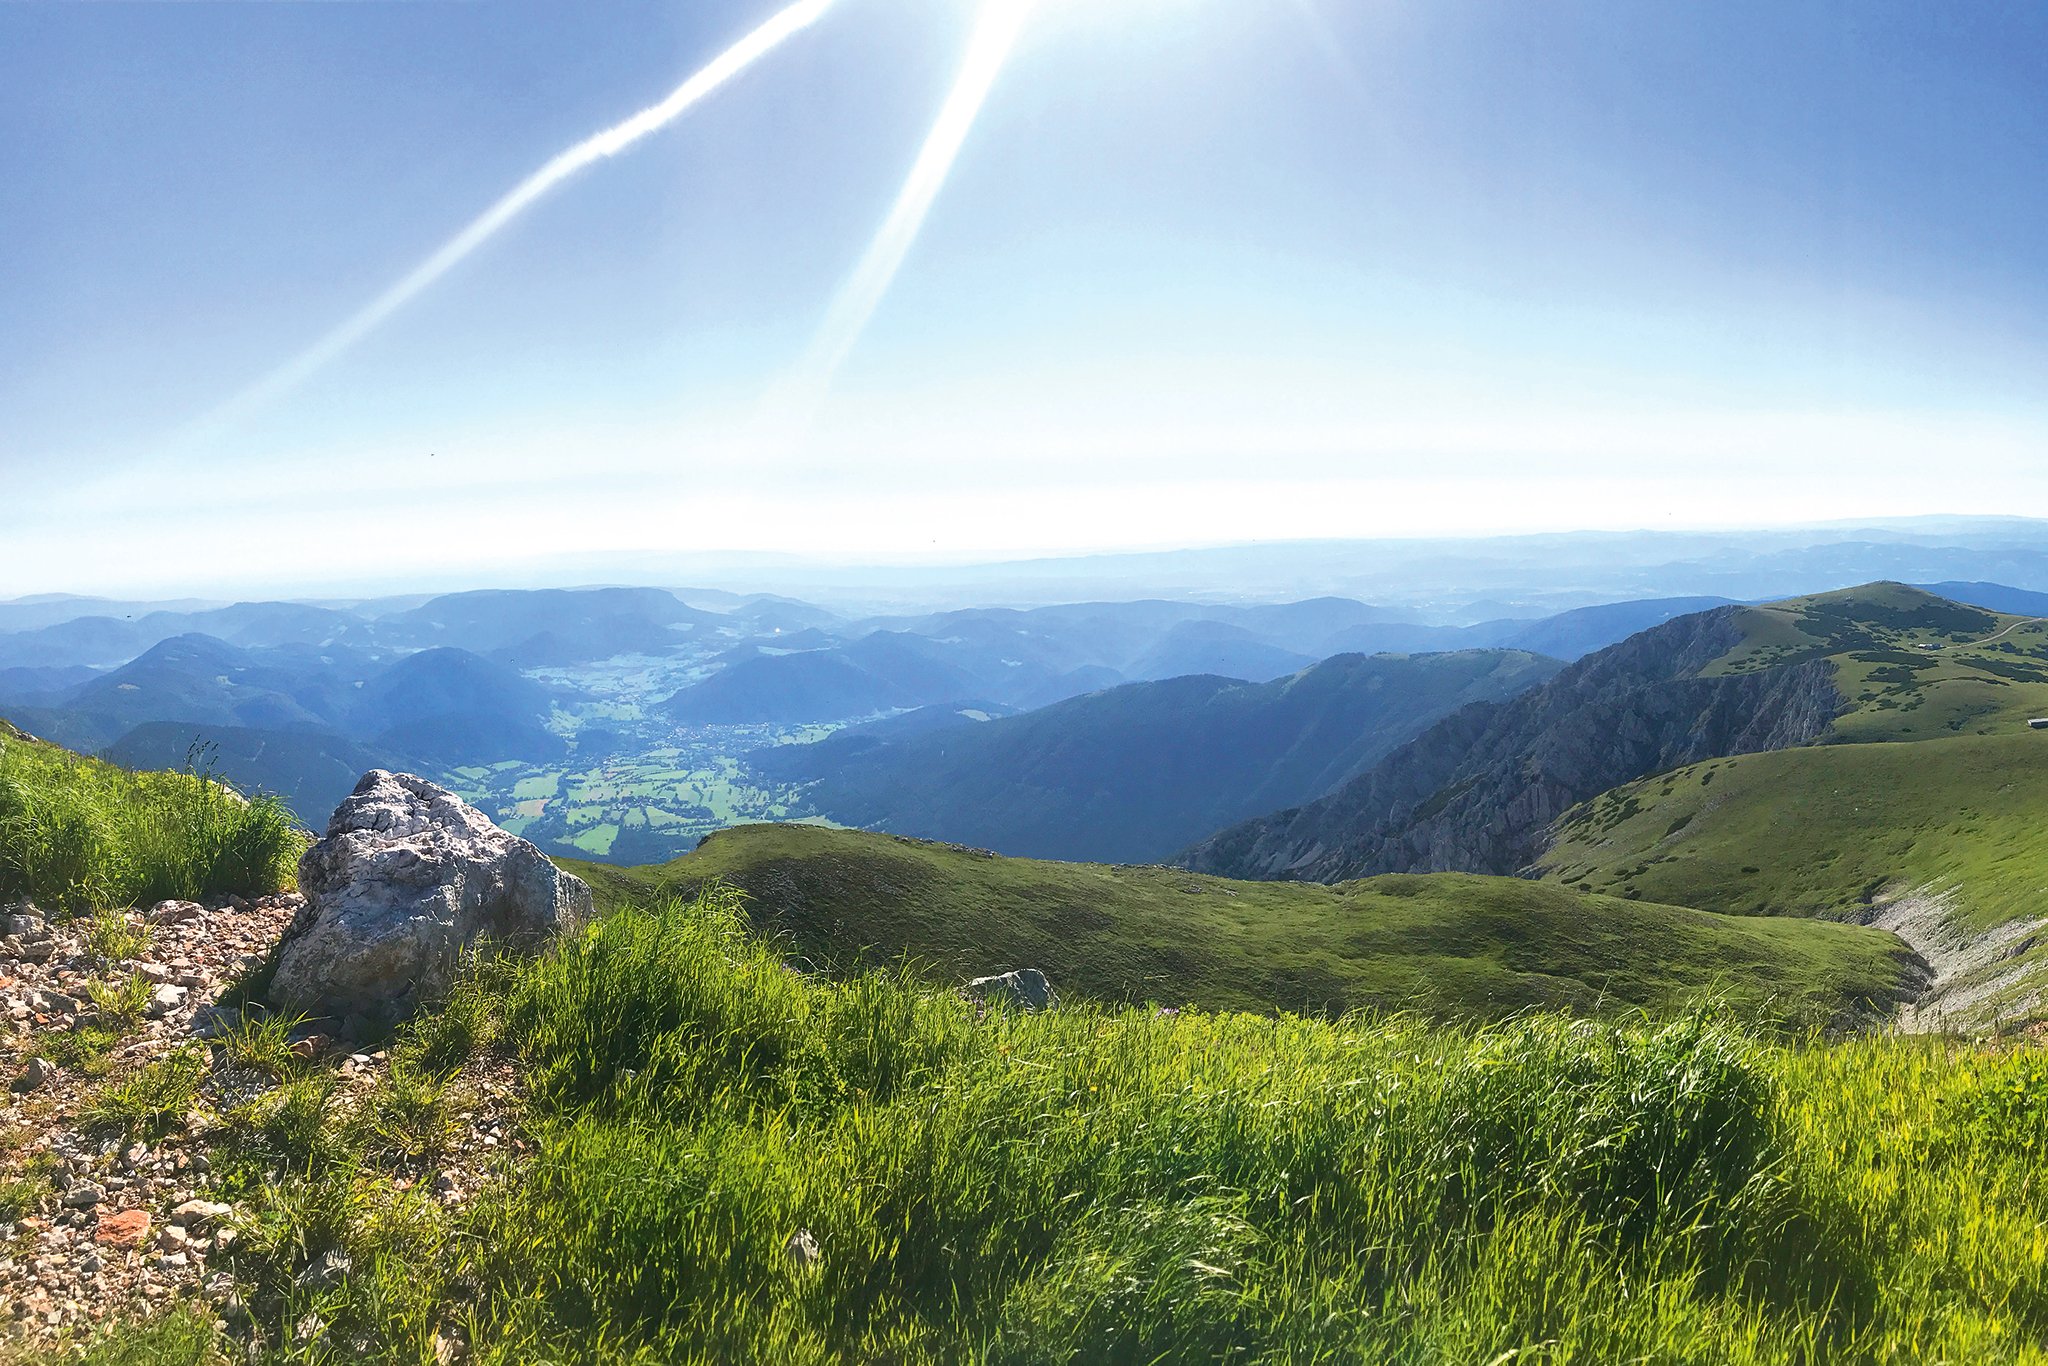 Auch wenn die ganz großen Berge fehlen, ist die wunderbare Landschaft 
Niederösterreichs nicht weniger einladend.